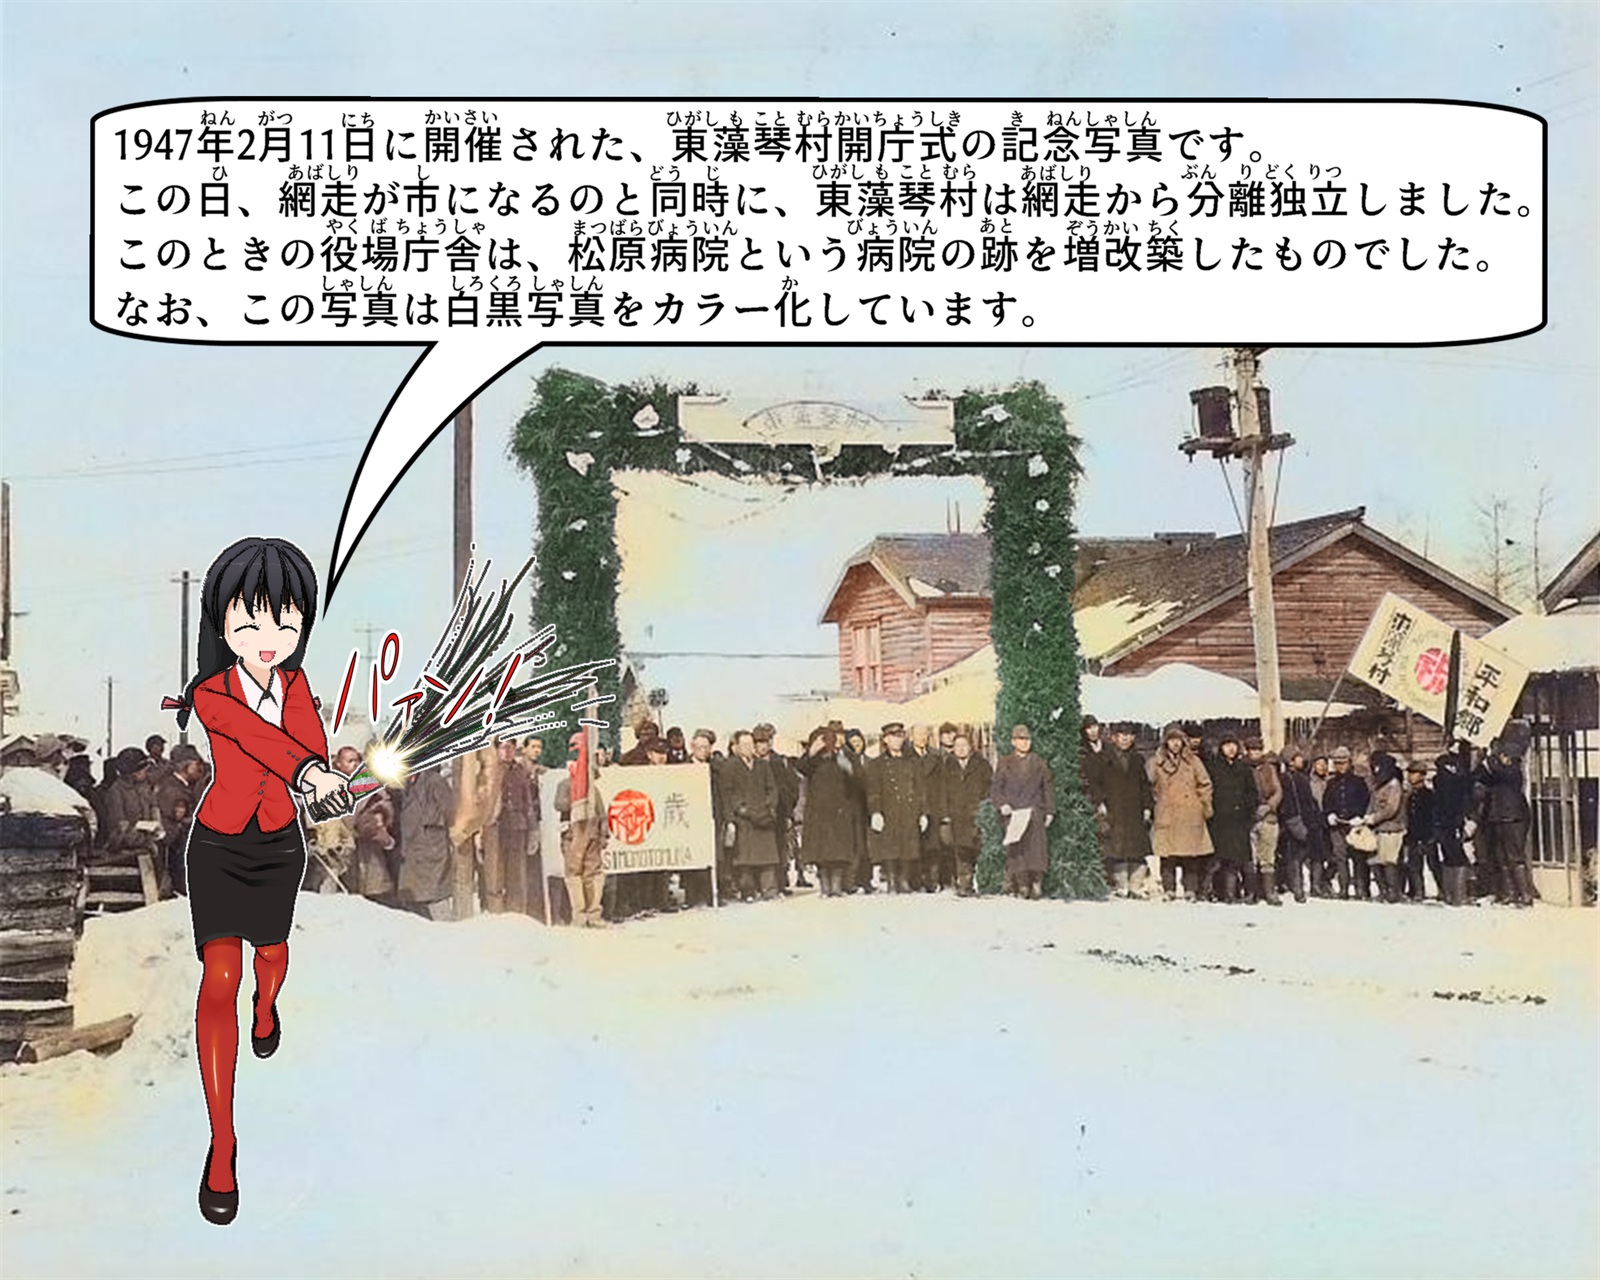 1947年に開催された東藻琴村開庁式の記念写真について説明しているイラスト